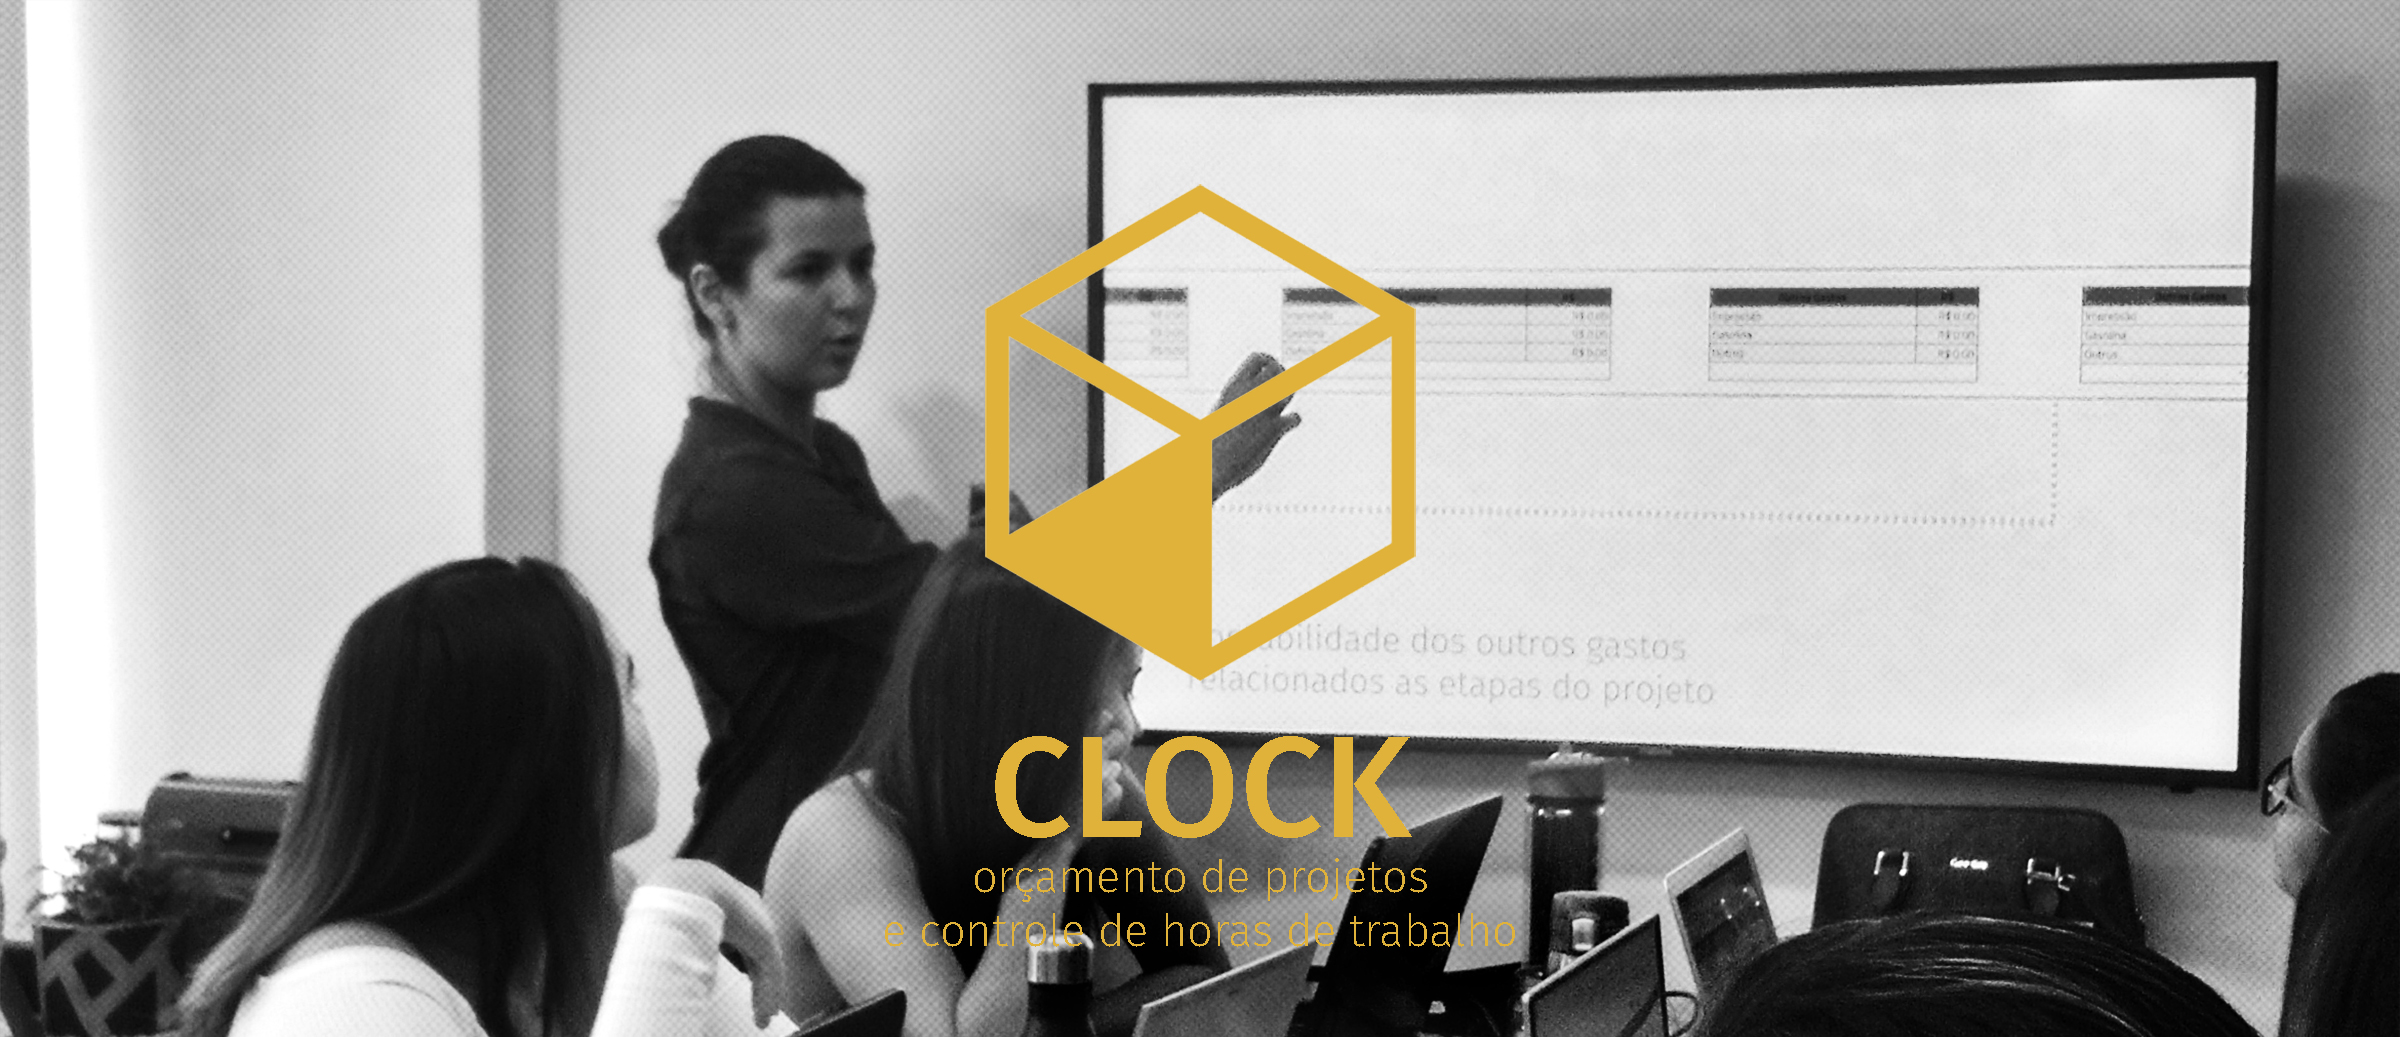 Curso CLOCK: orçamento de projeto e controle de horas de trabalho. Foto: Diorama